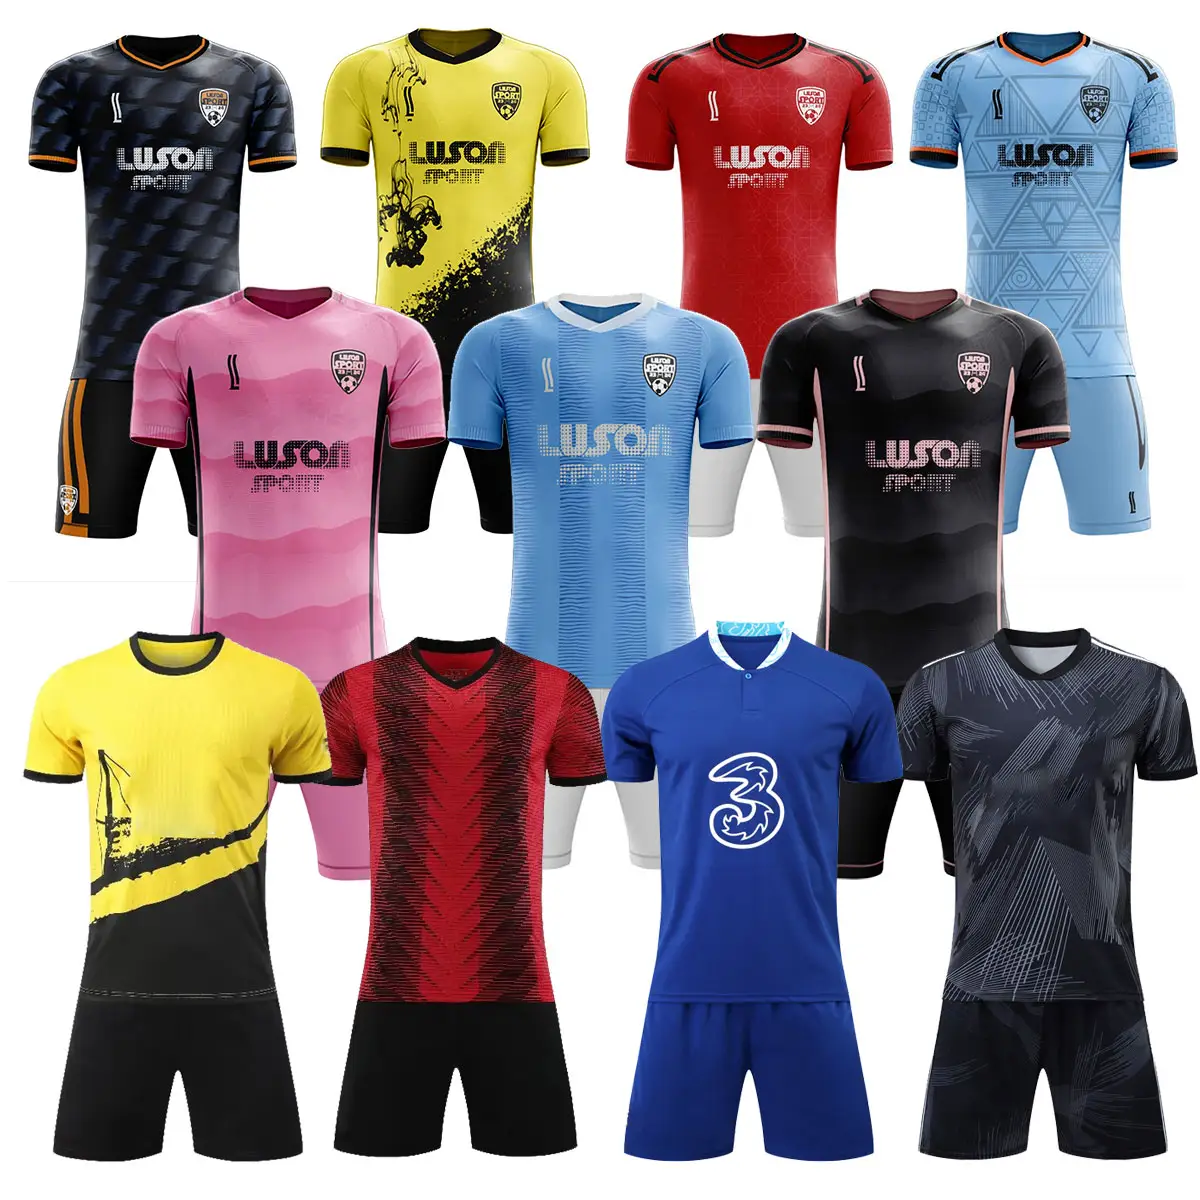 Camiseta de fútbol de calidad de Tailandia de secado rápido LUSON, camiseta de fútbol Retro transpirable, ropa de fútbol